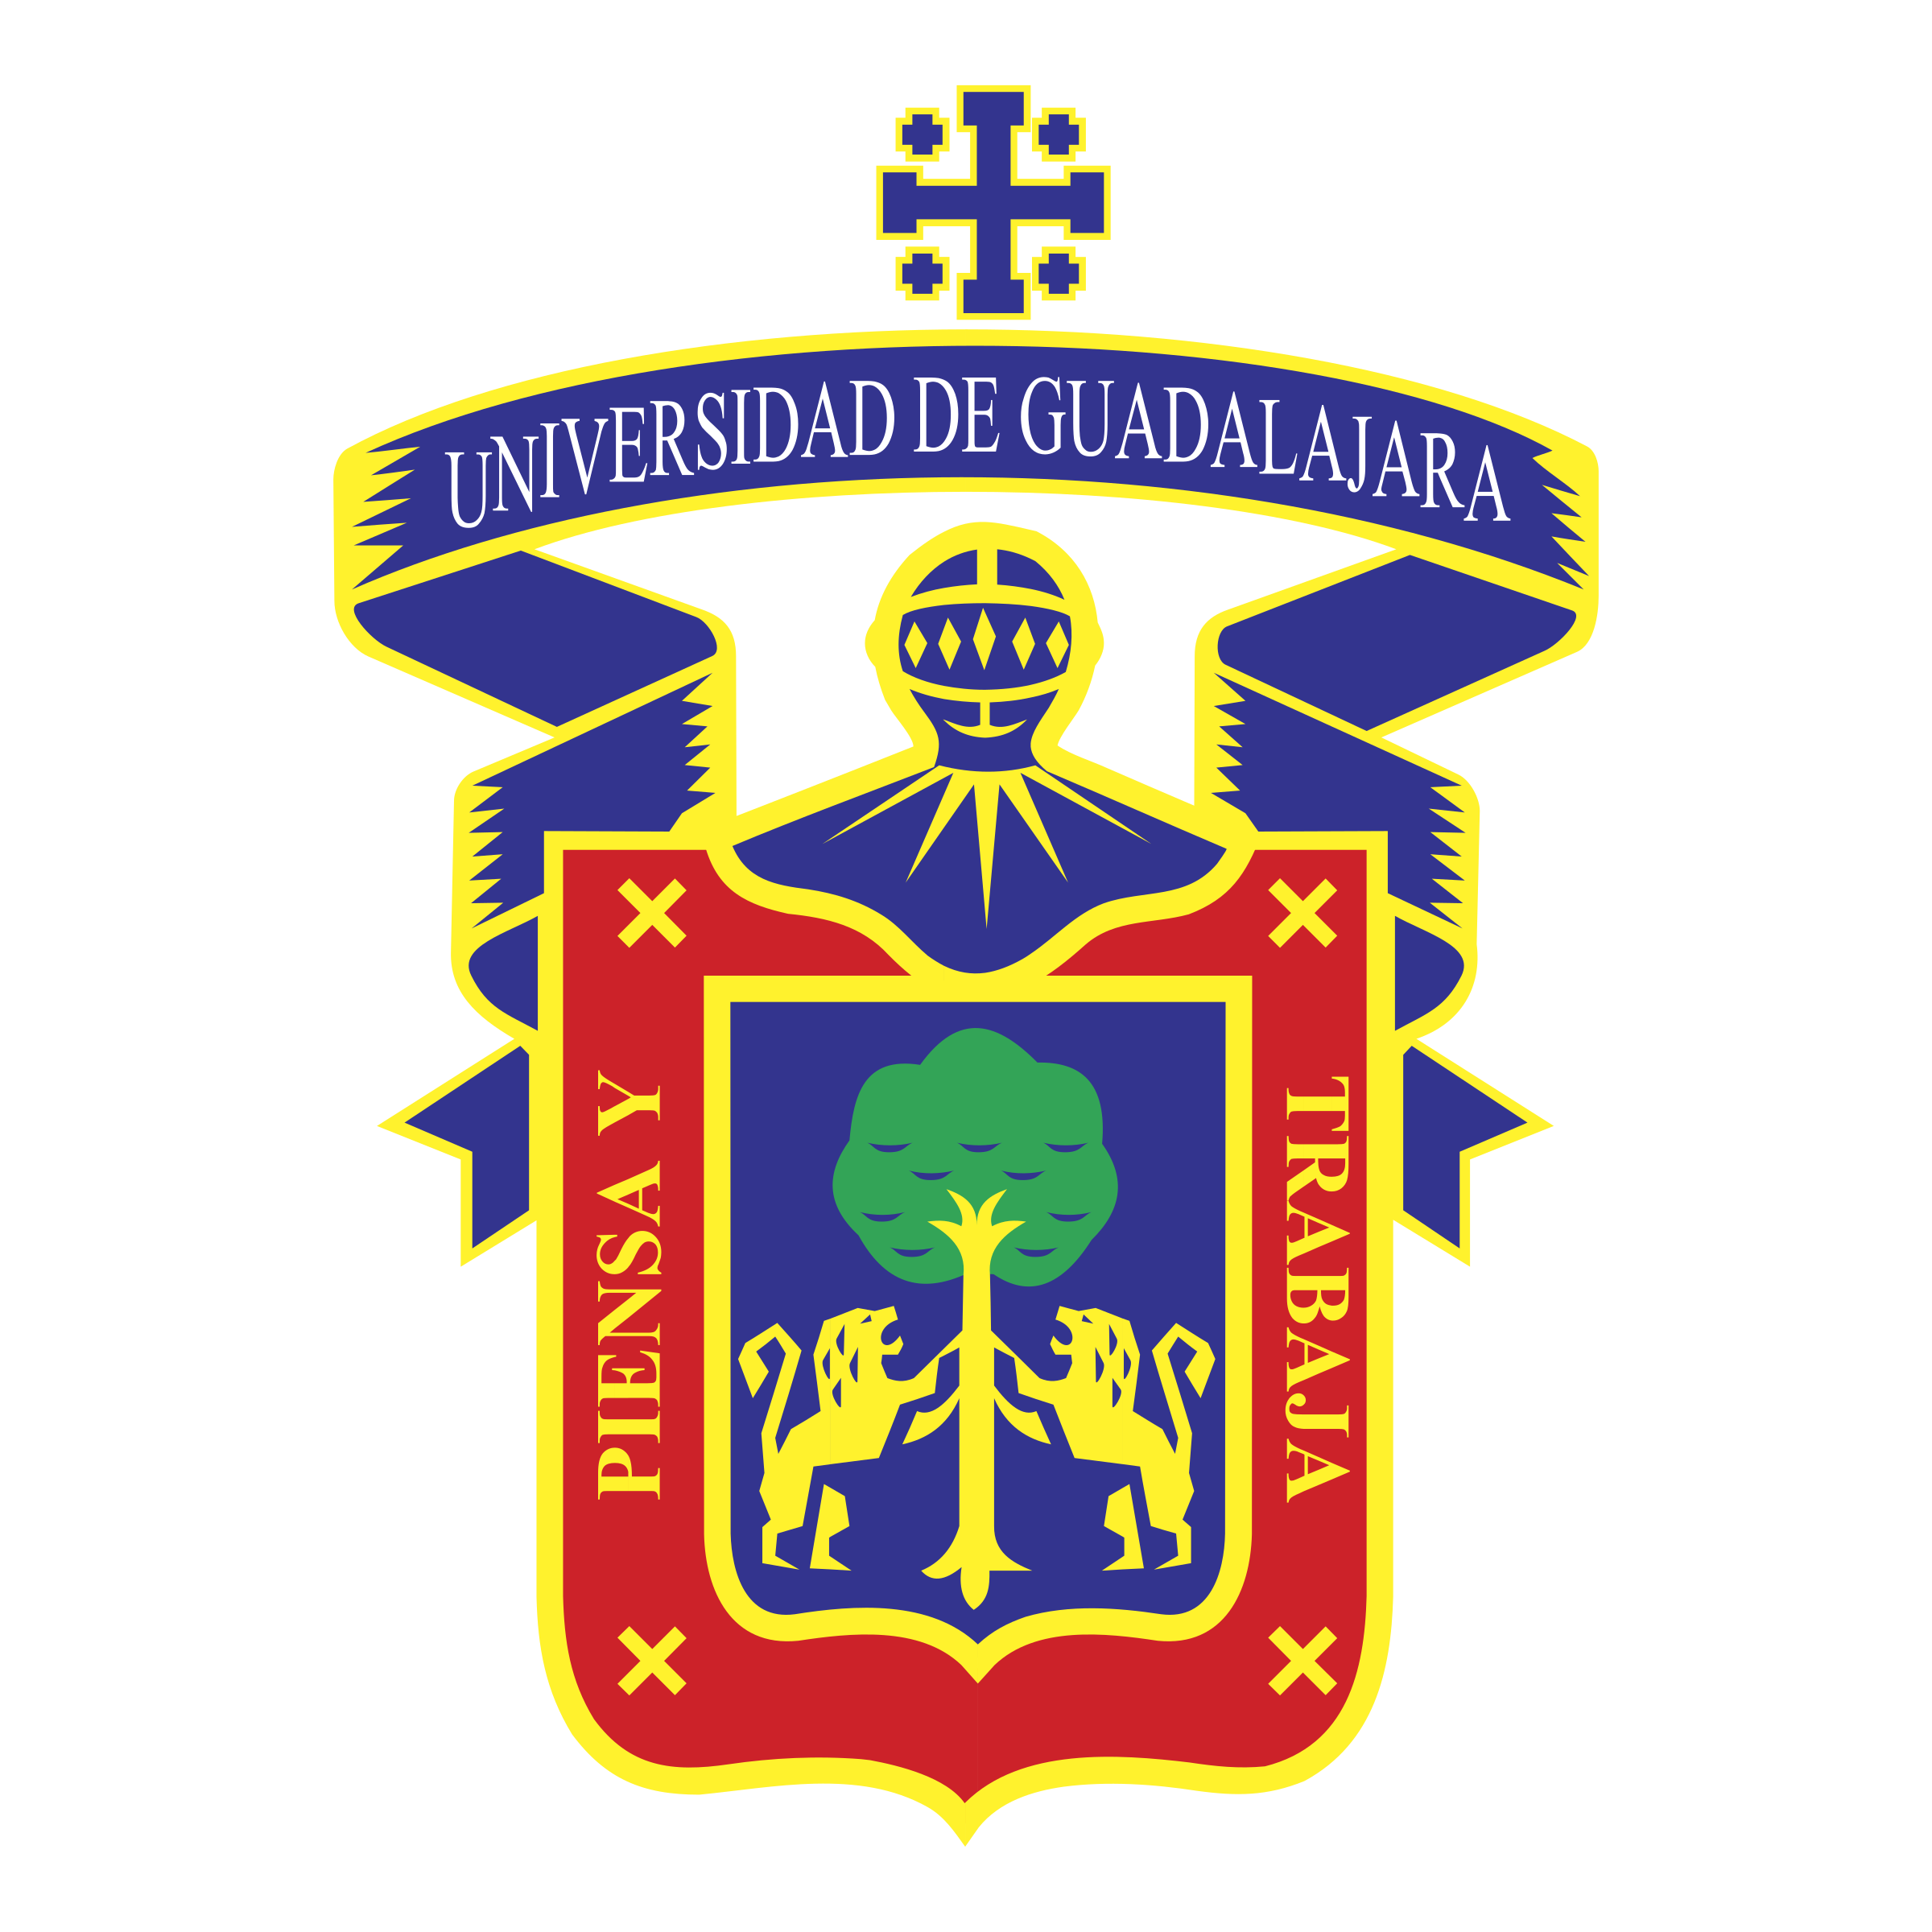 Logo udg